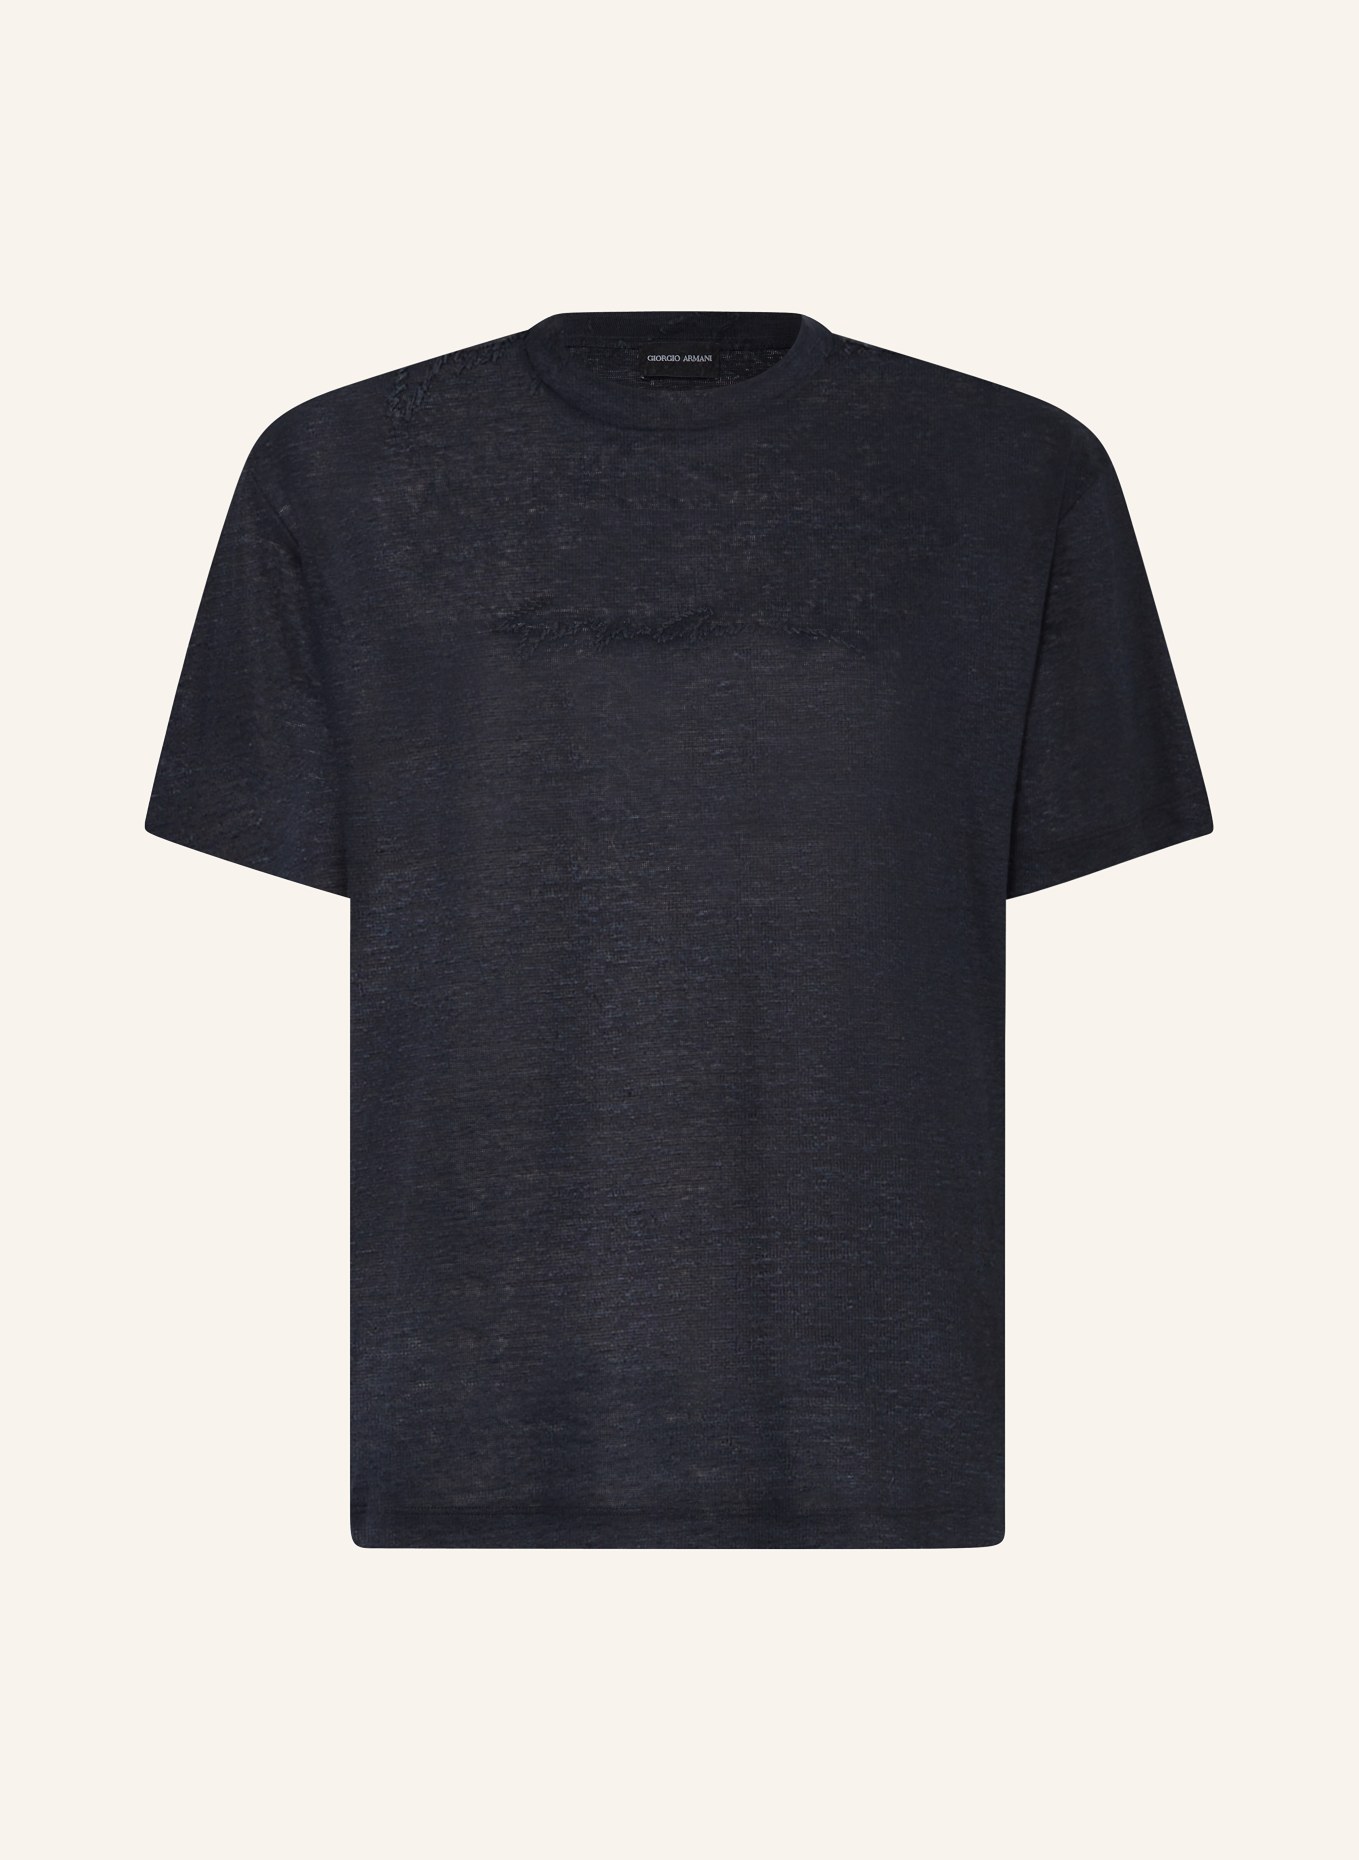 GIORGIO ARMANI T-shirt made of linen, Color: DARK BLUE (Image 1)